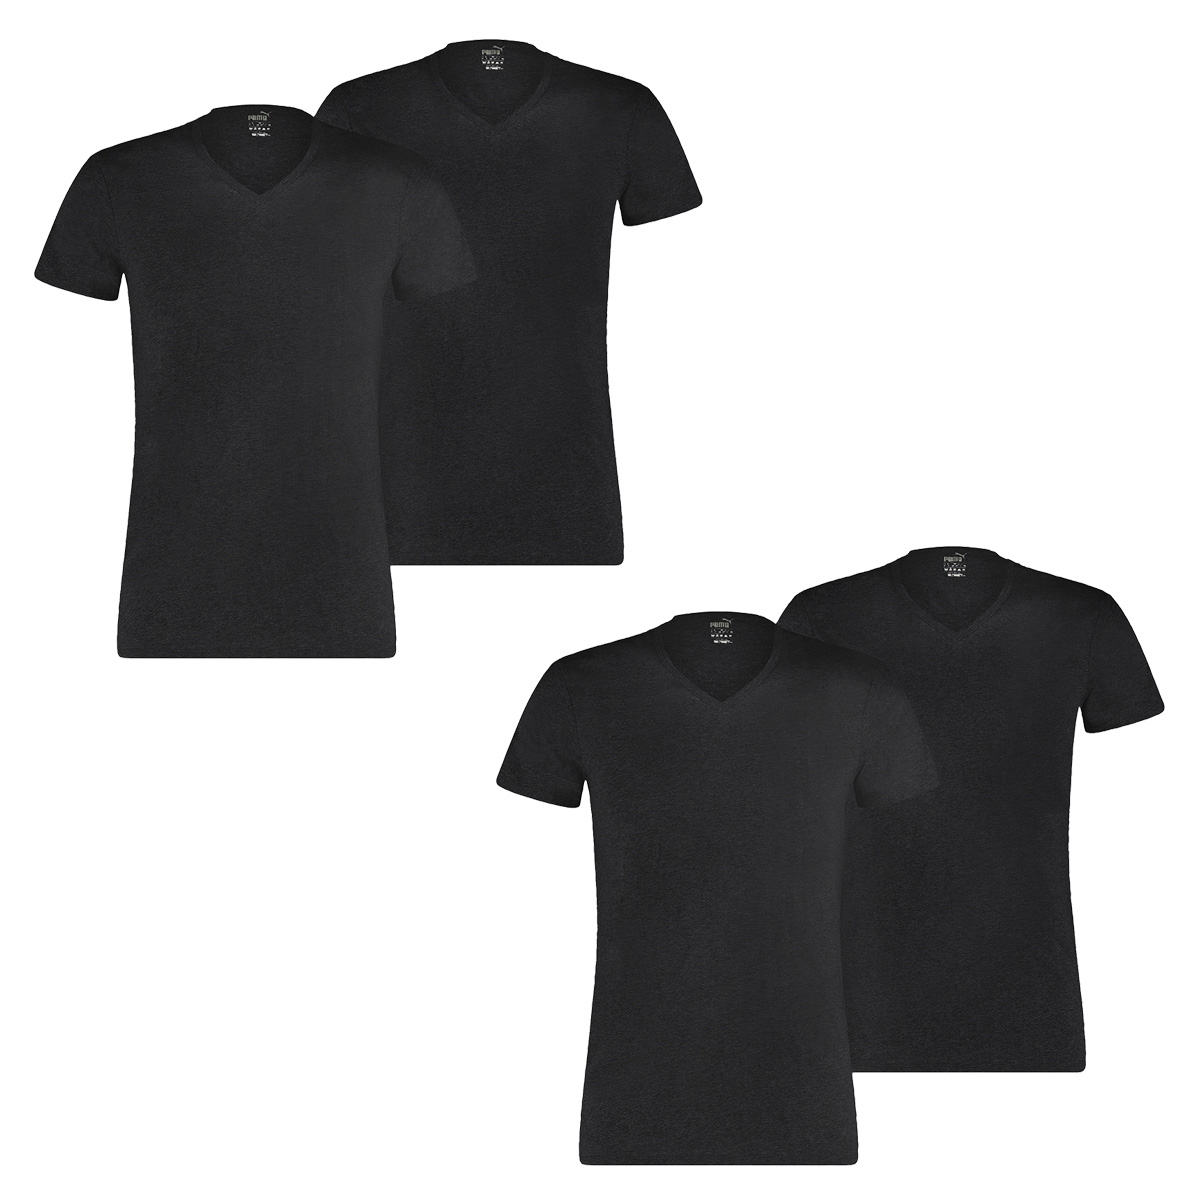 4 er Pack Puma Basic V Neck T-Shirt Men Herren Unterhemd V-Ausschnitt